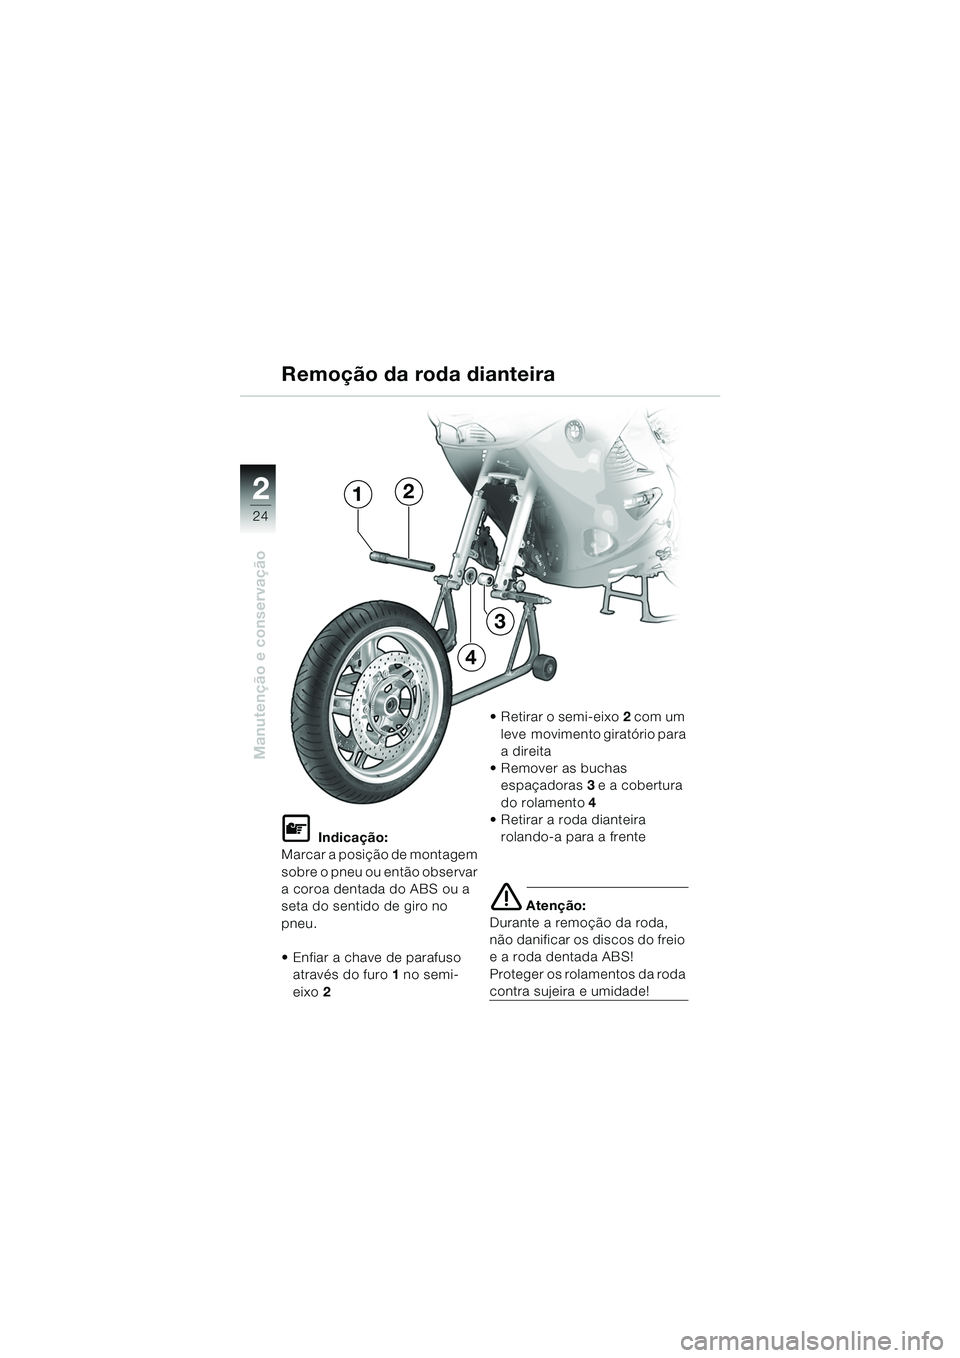 BMW MOTORRAD K 1200 RS 2004  Manual do condutor (in Portuguese) 24
Manutenção e conservação
2
L Indicação:
Marcar a posição de montagem 
sobre o pneu ou então observar 
a coroa dentada do ABS ou a 
seta do sentido de giro no 
pneu.
 Enfiar a chave de par